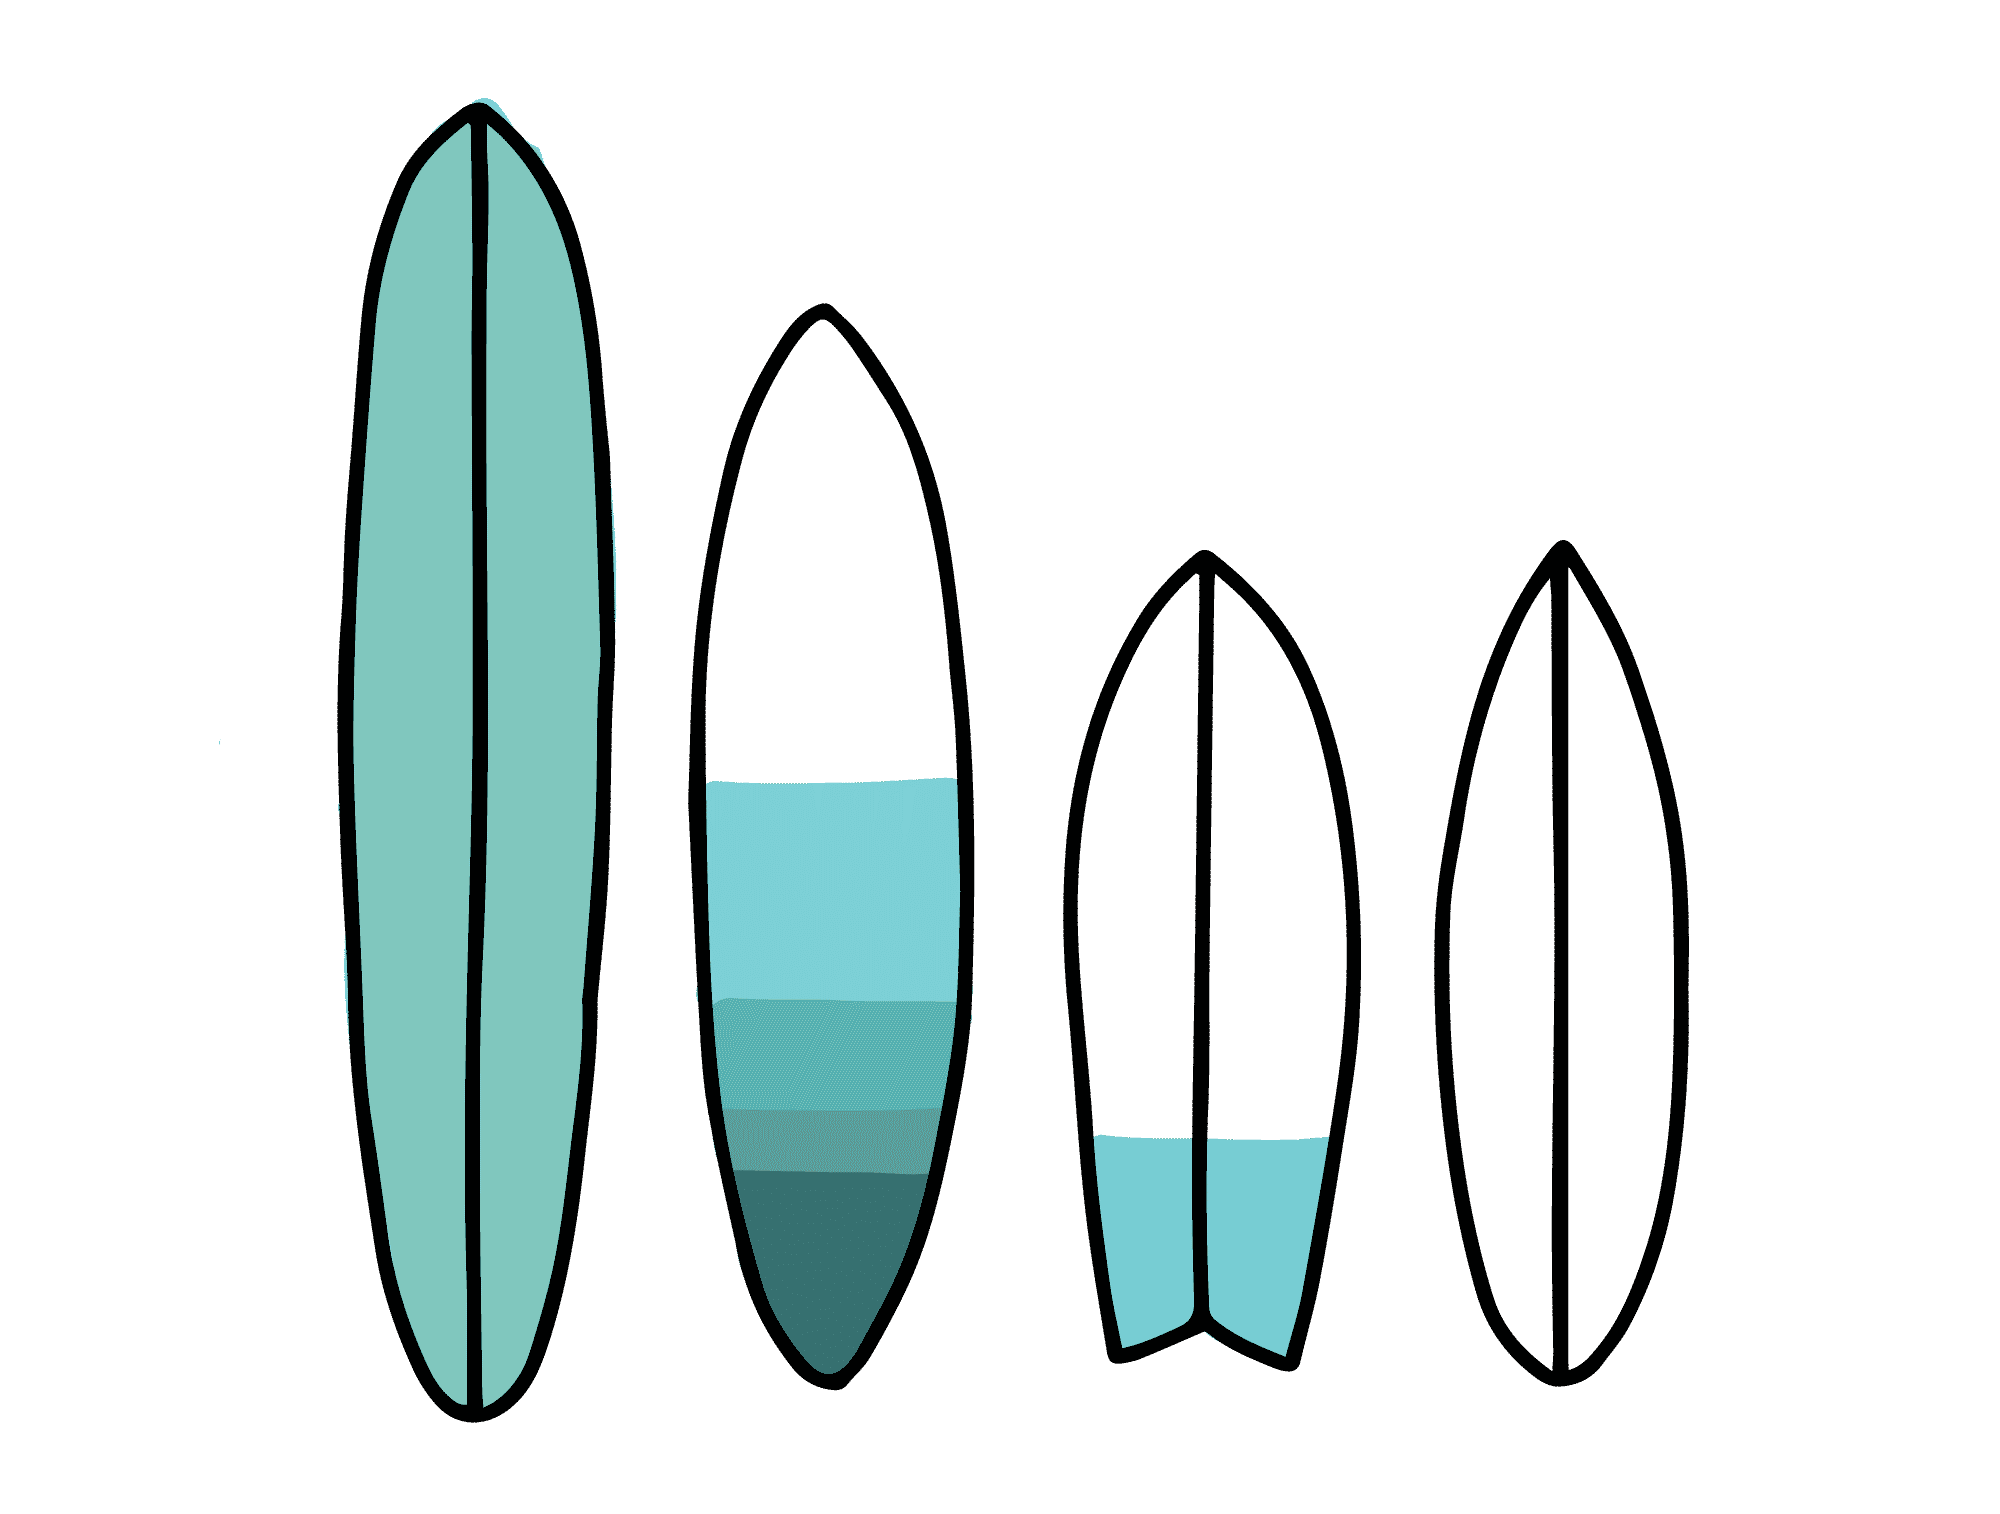 Comment savoir quelle planche de surf choisir ?